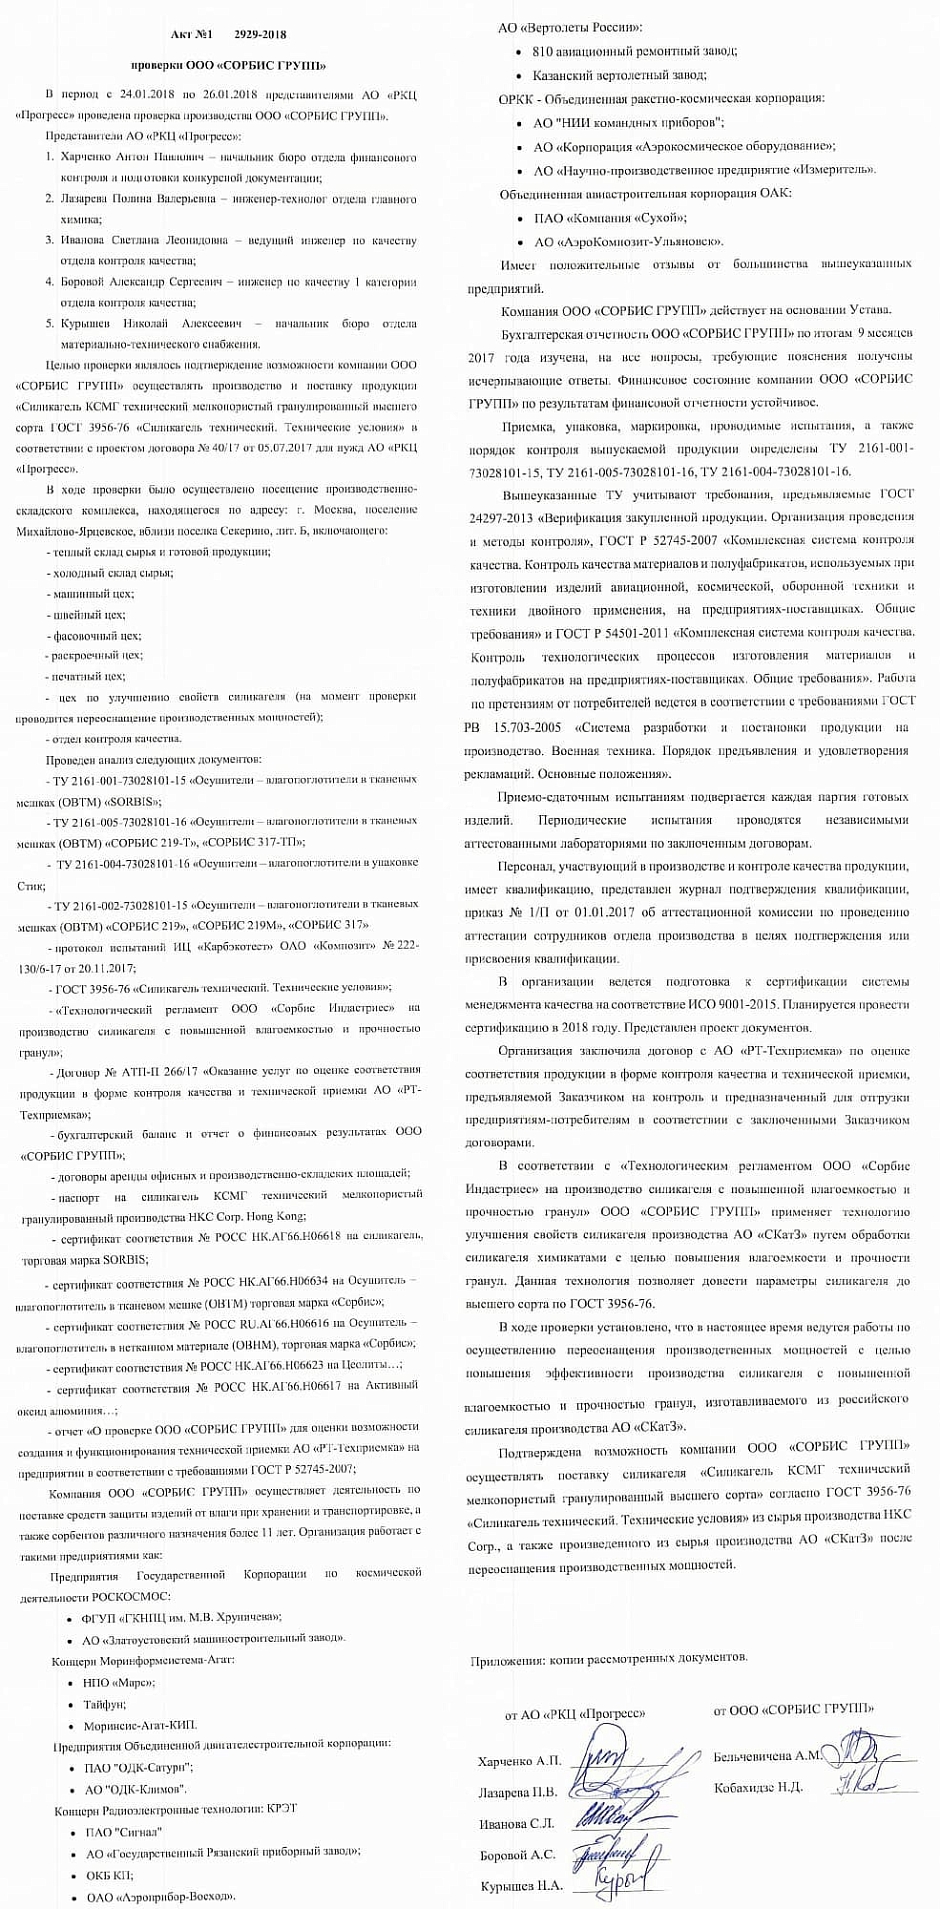 Результаты проверки ООО «СОРБИС ГРУПП» представителями АО «РКЦ «Прогресс»